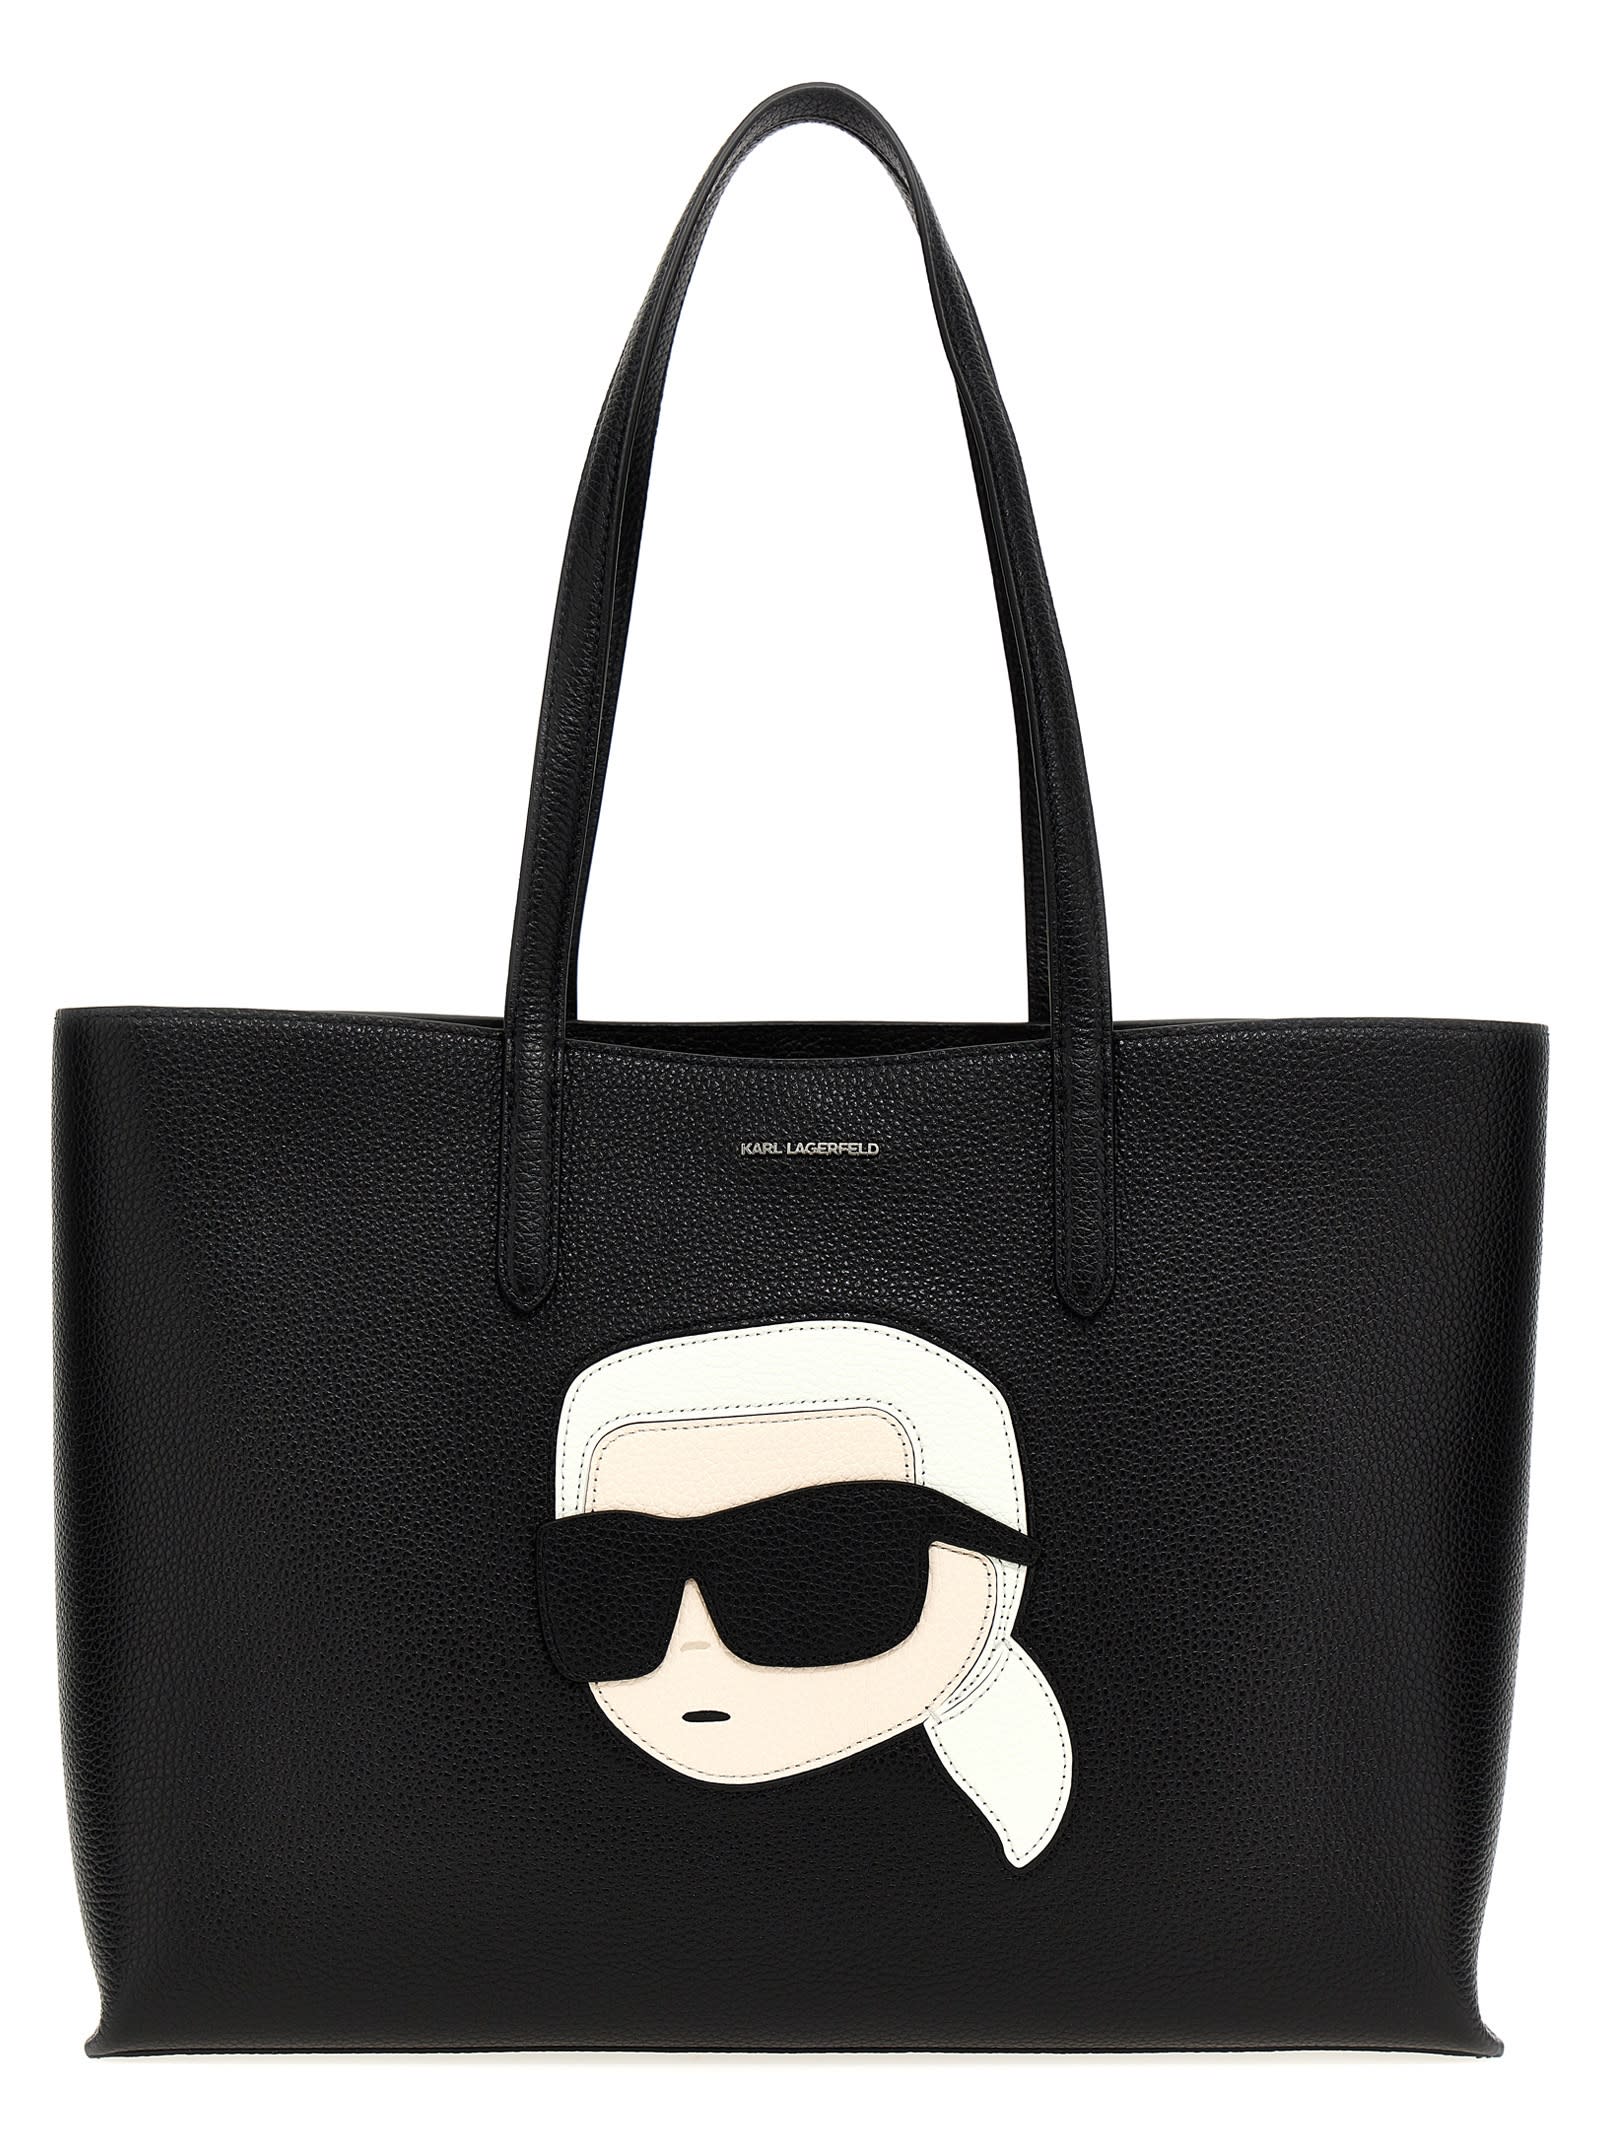 Karl Lagerfeld k/ikonik Large Shopping Bag